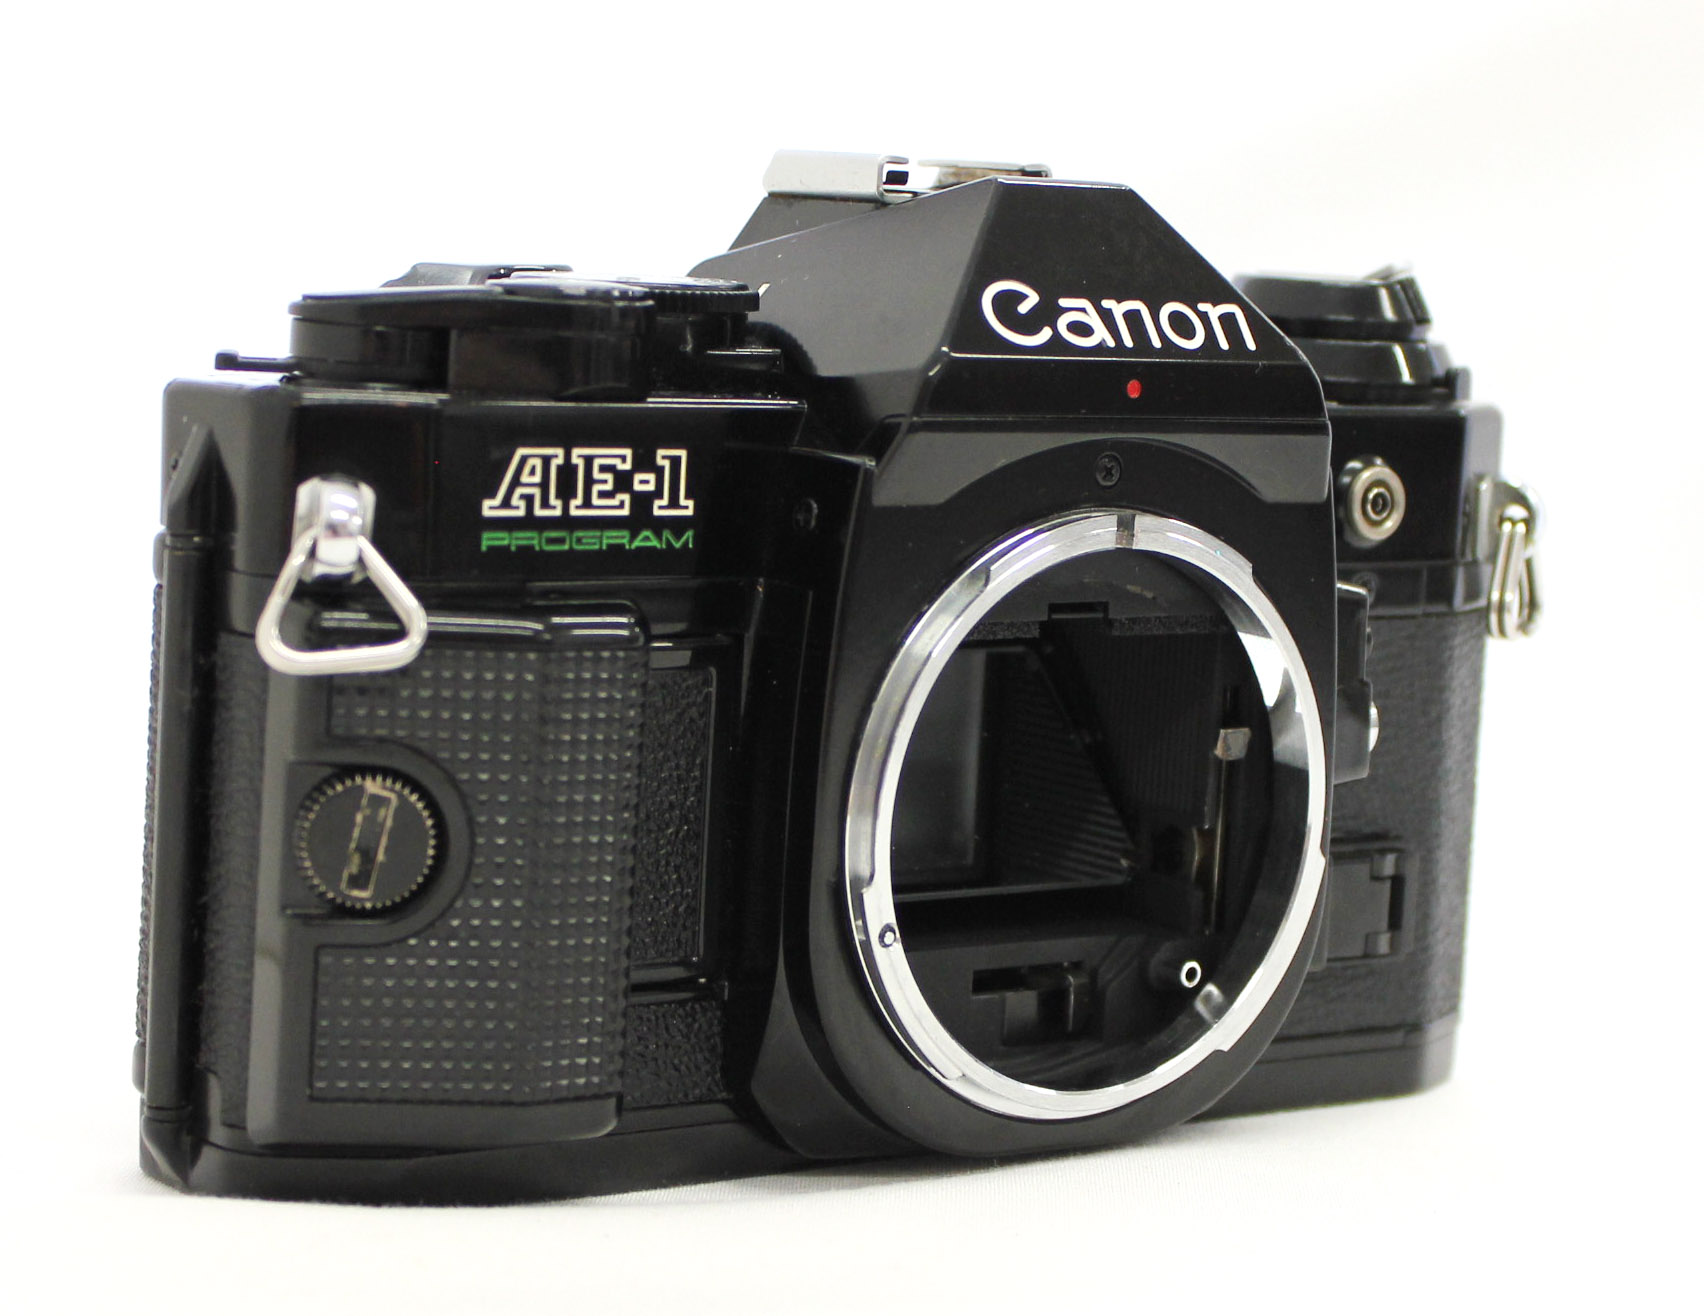 カメラ フィルムカメラ Canon AE-1 Program 35mm SLR Film Camera Black with New FD 50mm F/1.4 Lens  from Japan (C1840) | Big Fish J-Camera (Big Fish J-Shop)